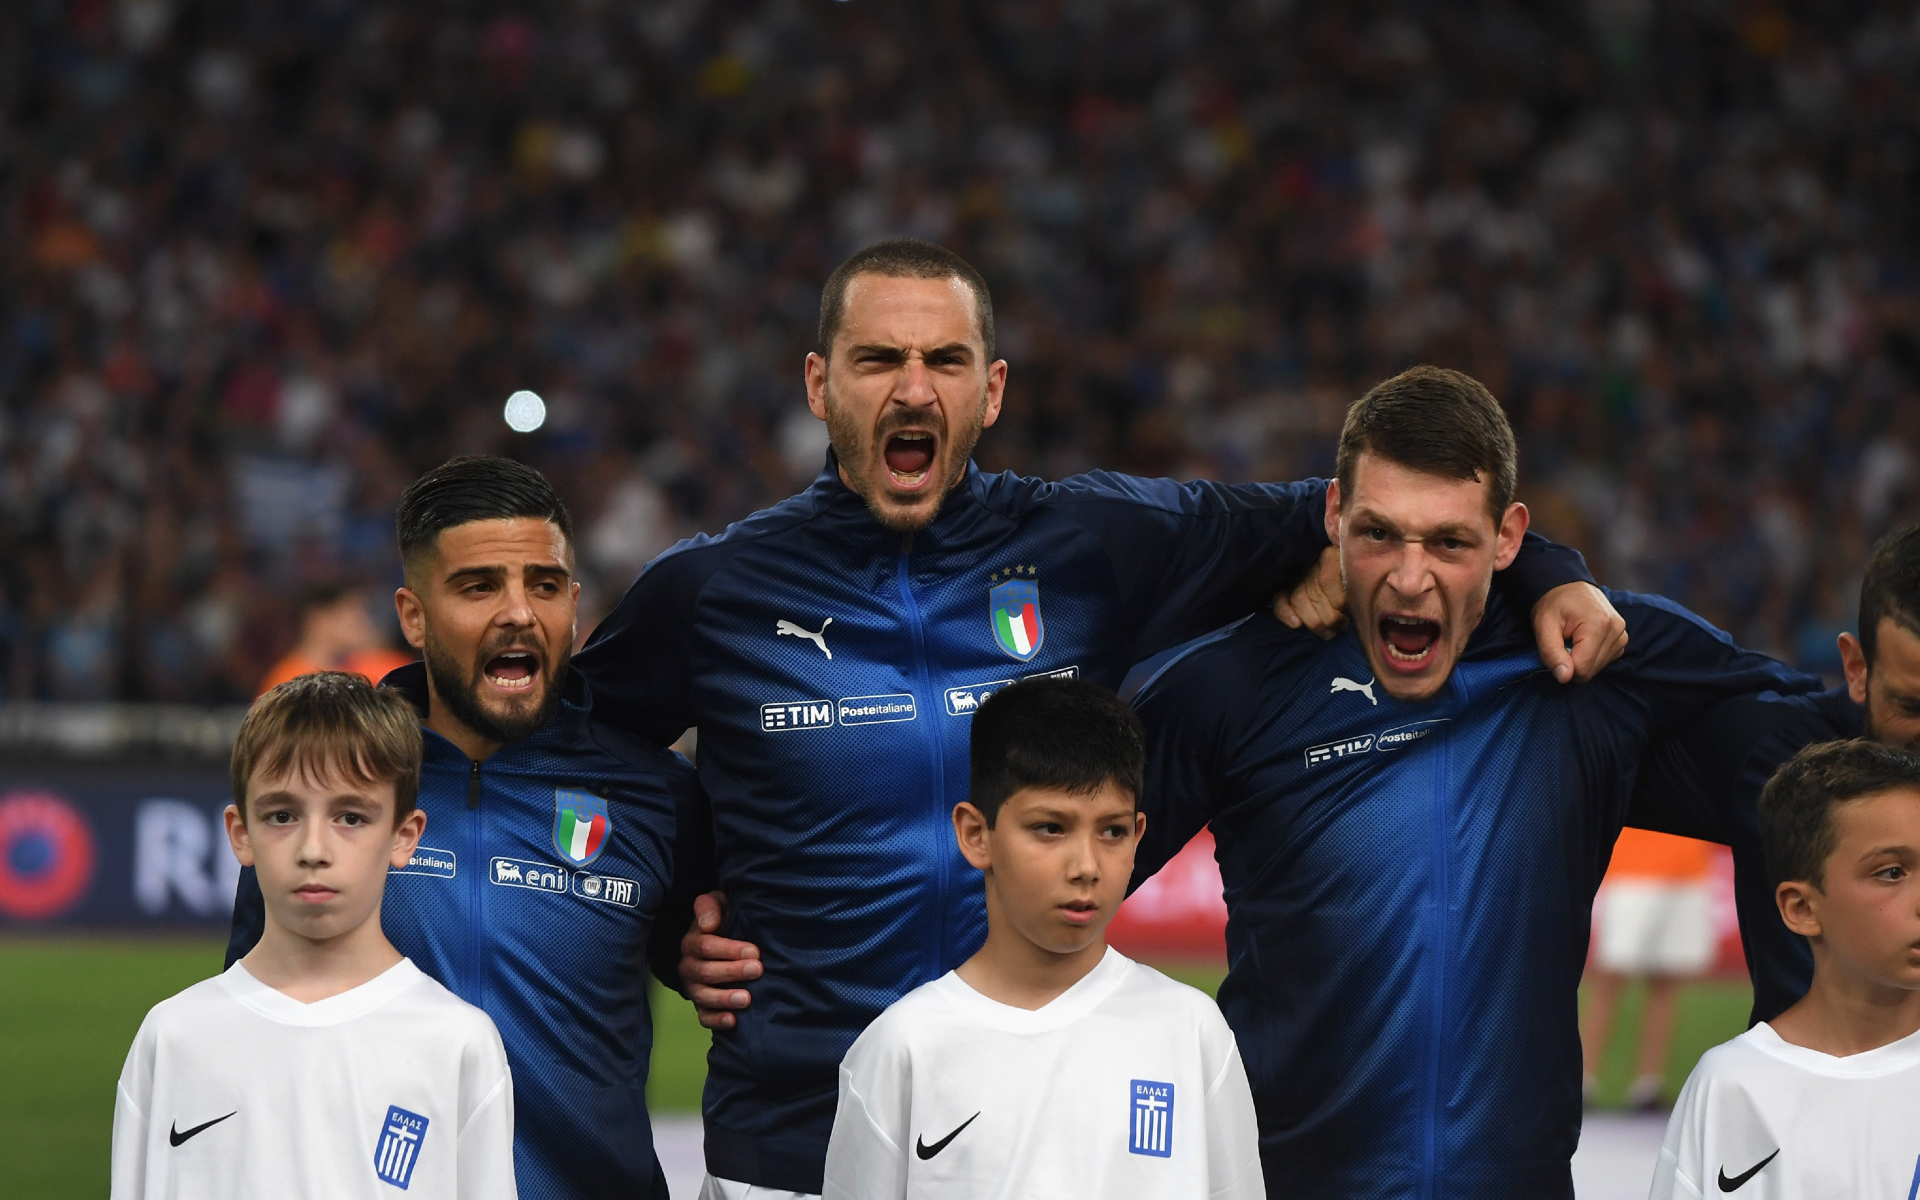 Италия футбол гимн